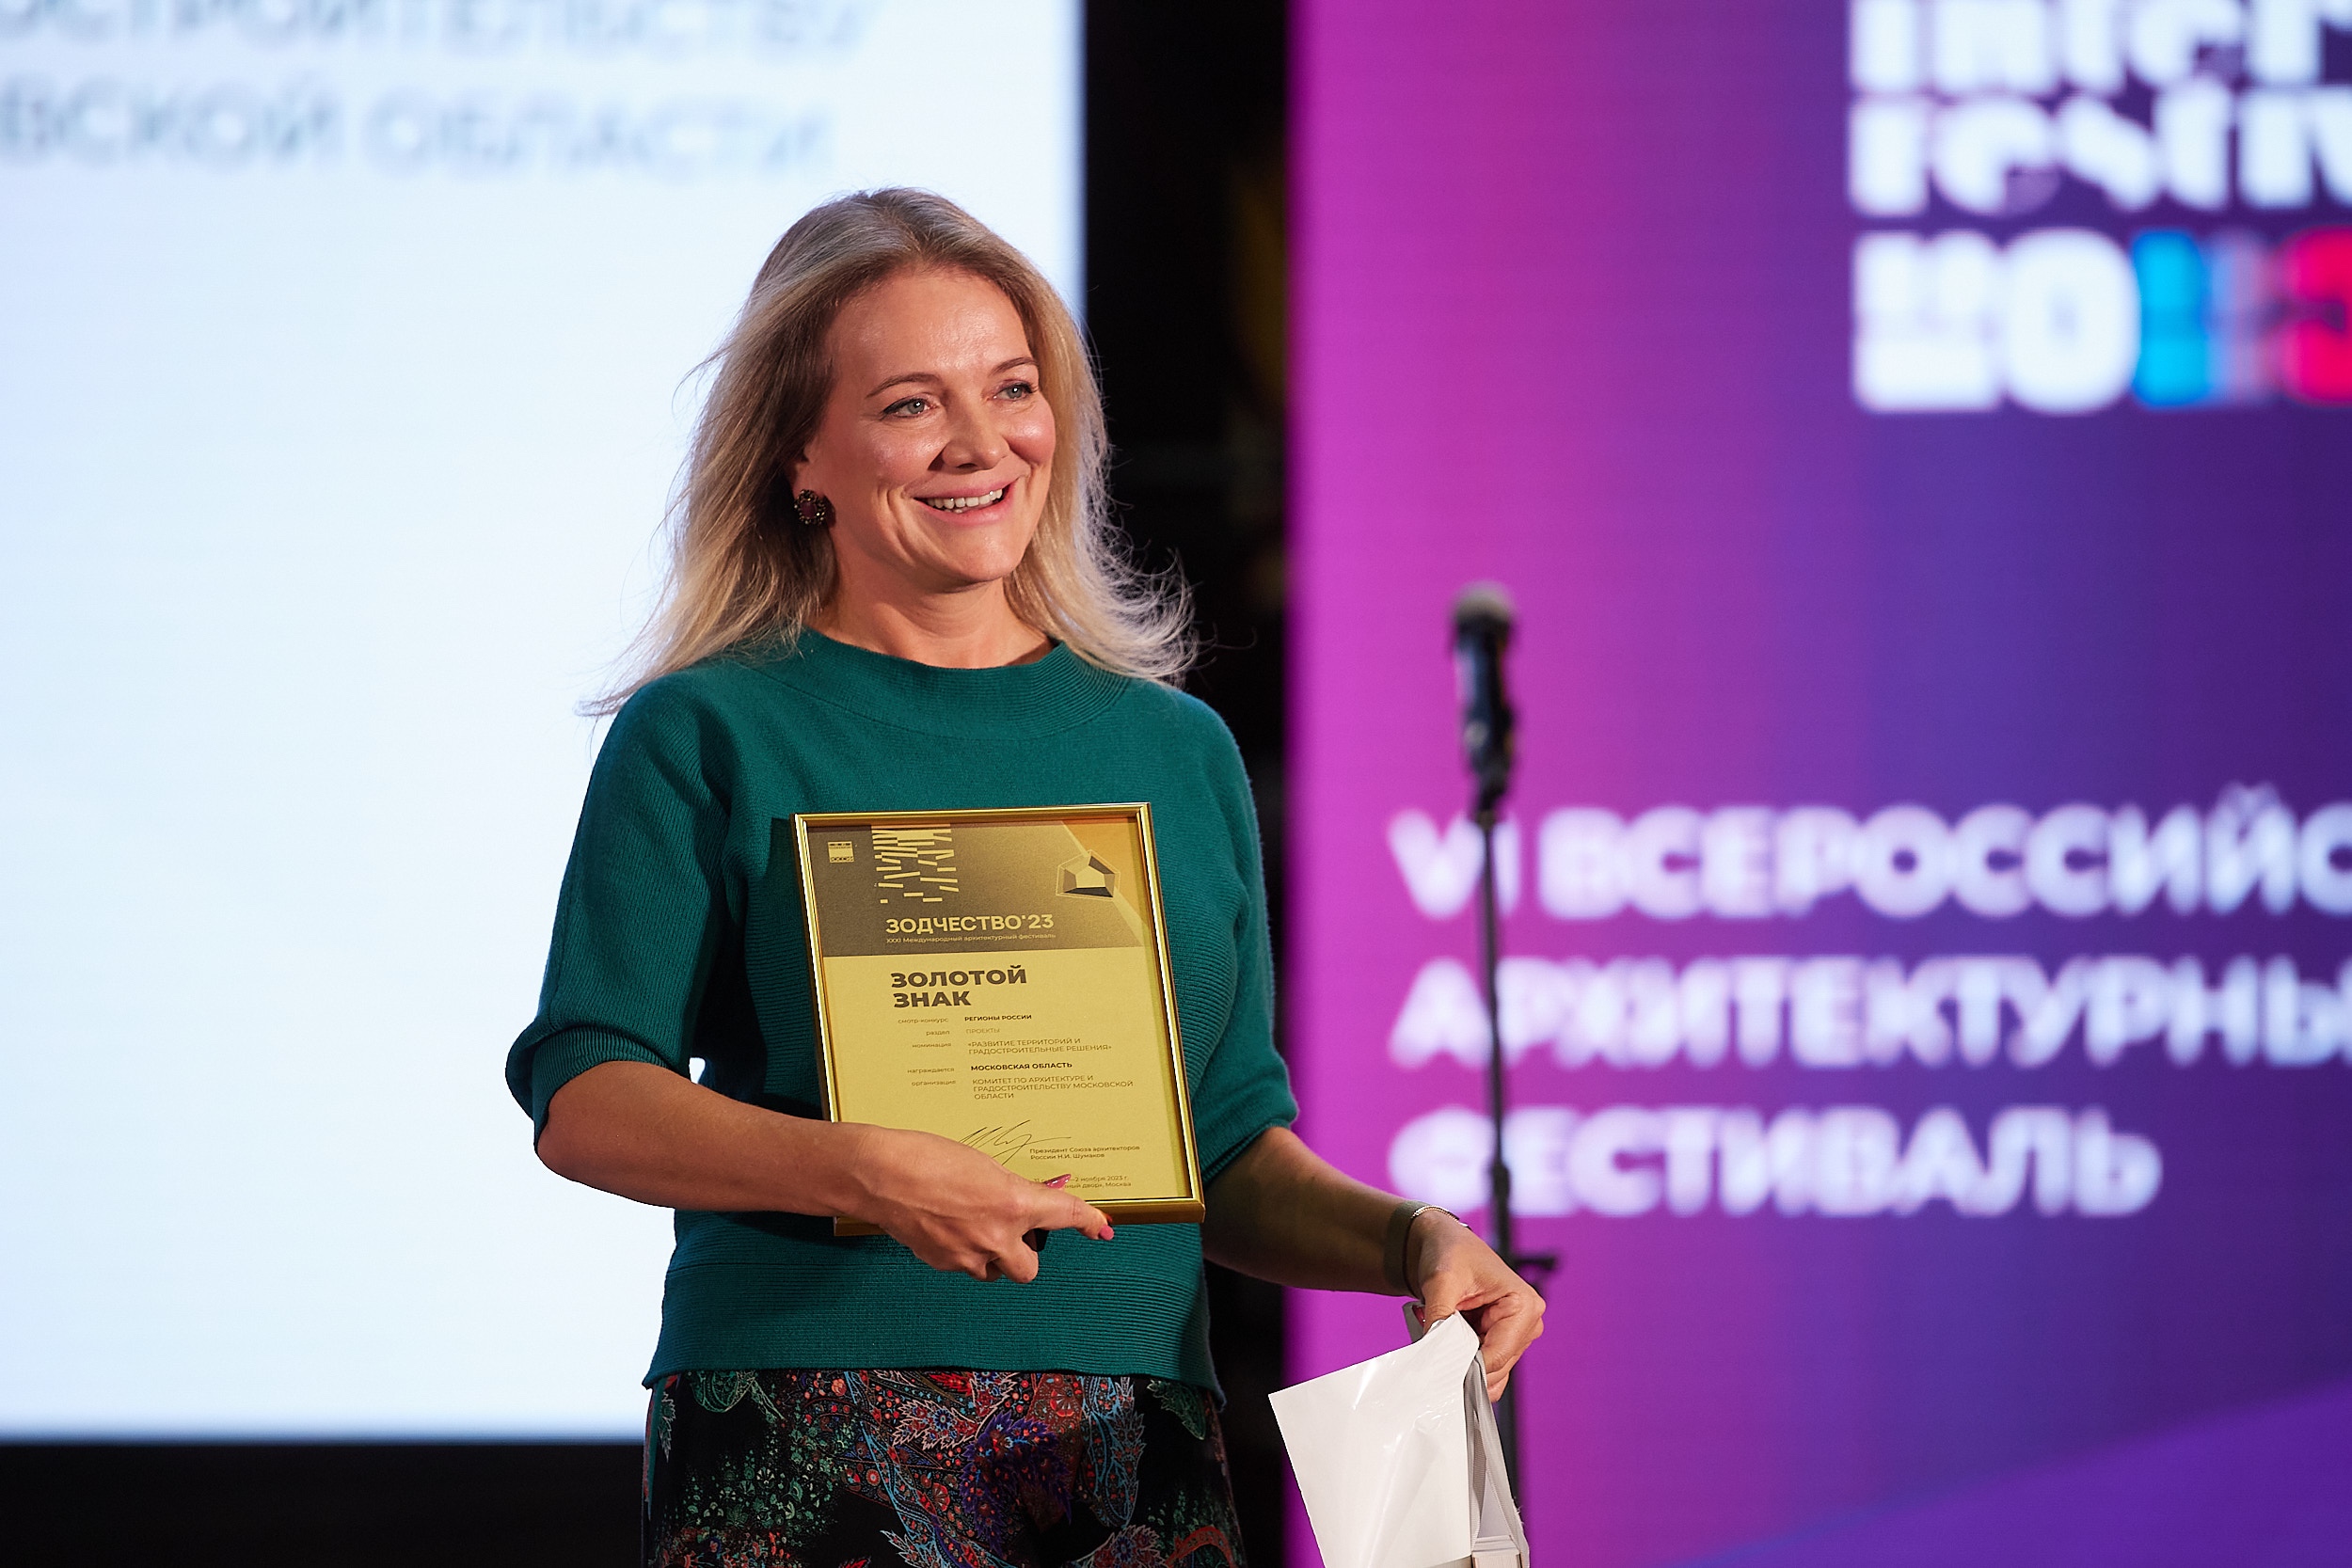 Московская область получила дипломы XXXI Международного фестиваля «Зодчество-2023»